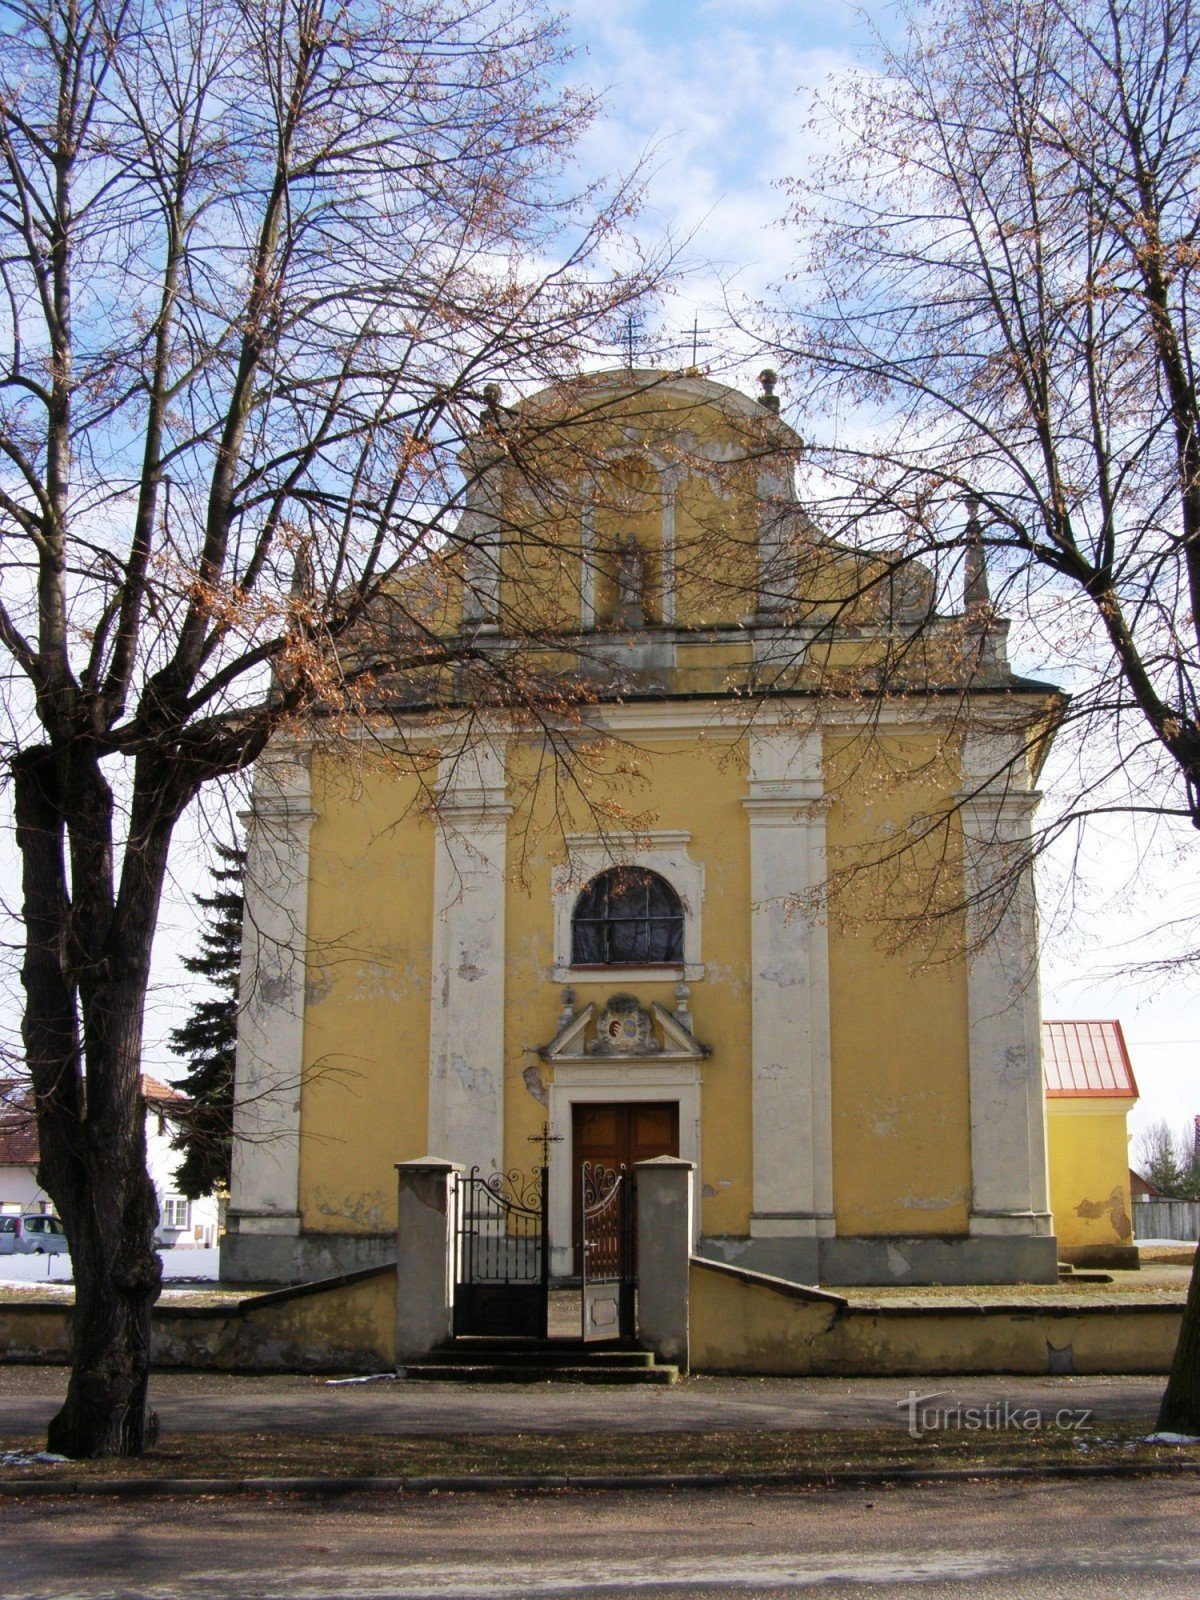 Lovčice - crkva sv. Bartolomeja sa zvonikom